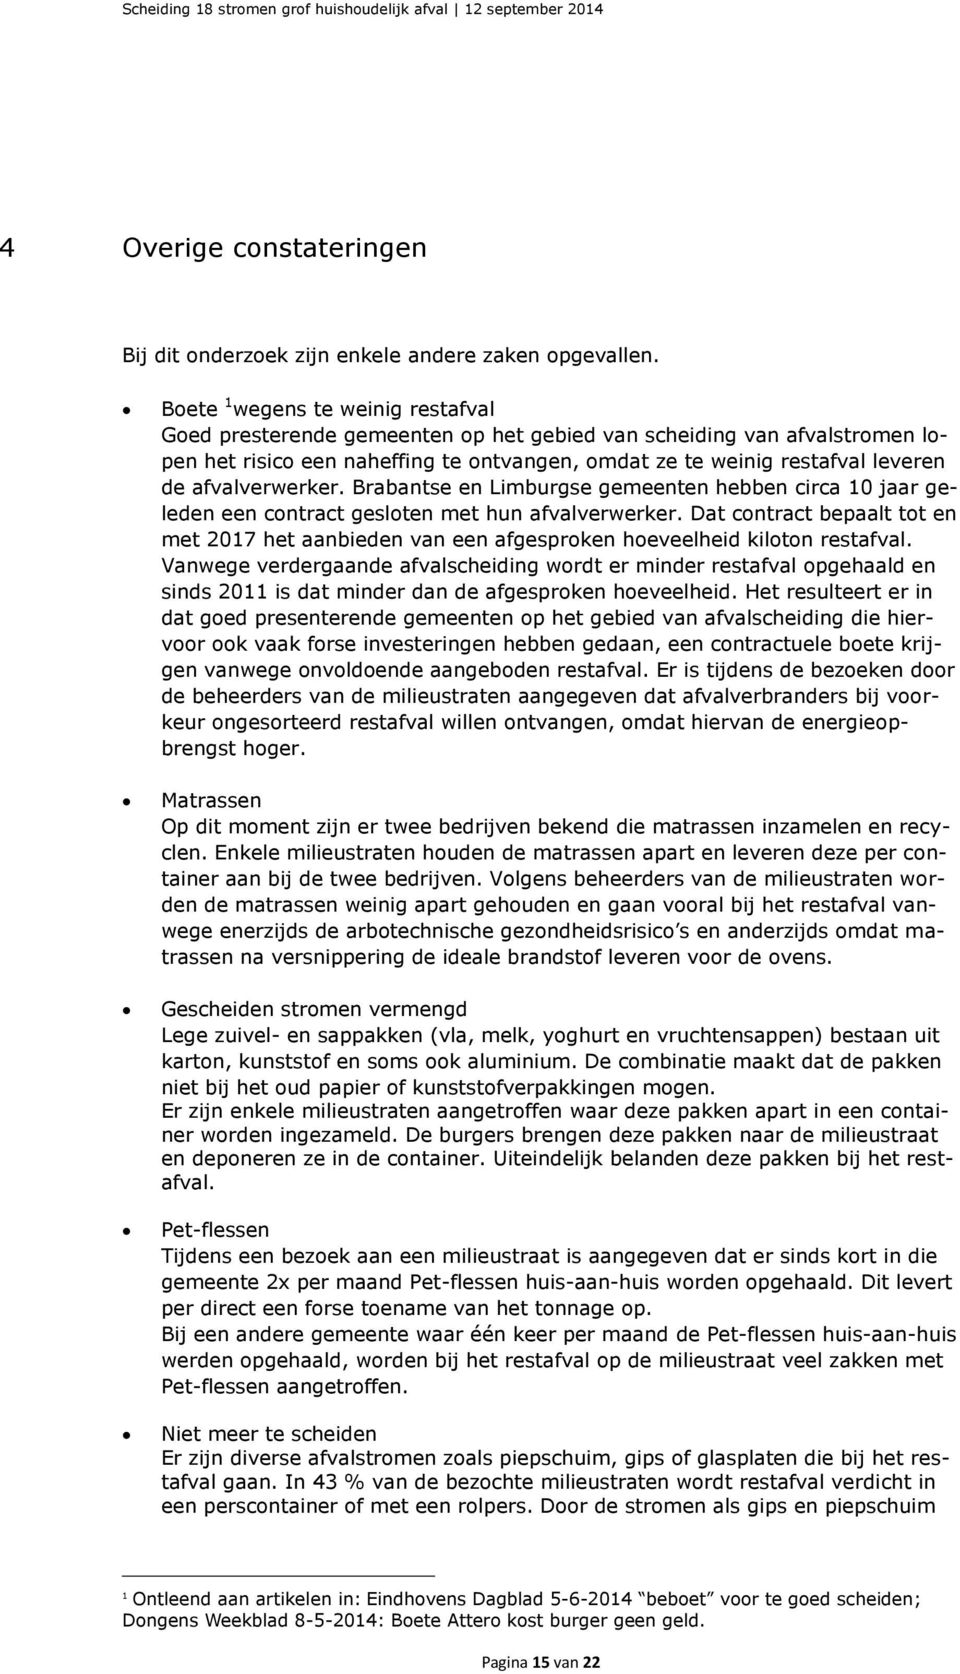 afvalverwerker. Brabantse en Limburgse gemeenten hebben circa 10 jaar geleden een contract gesloten met hun afvalverwerker.